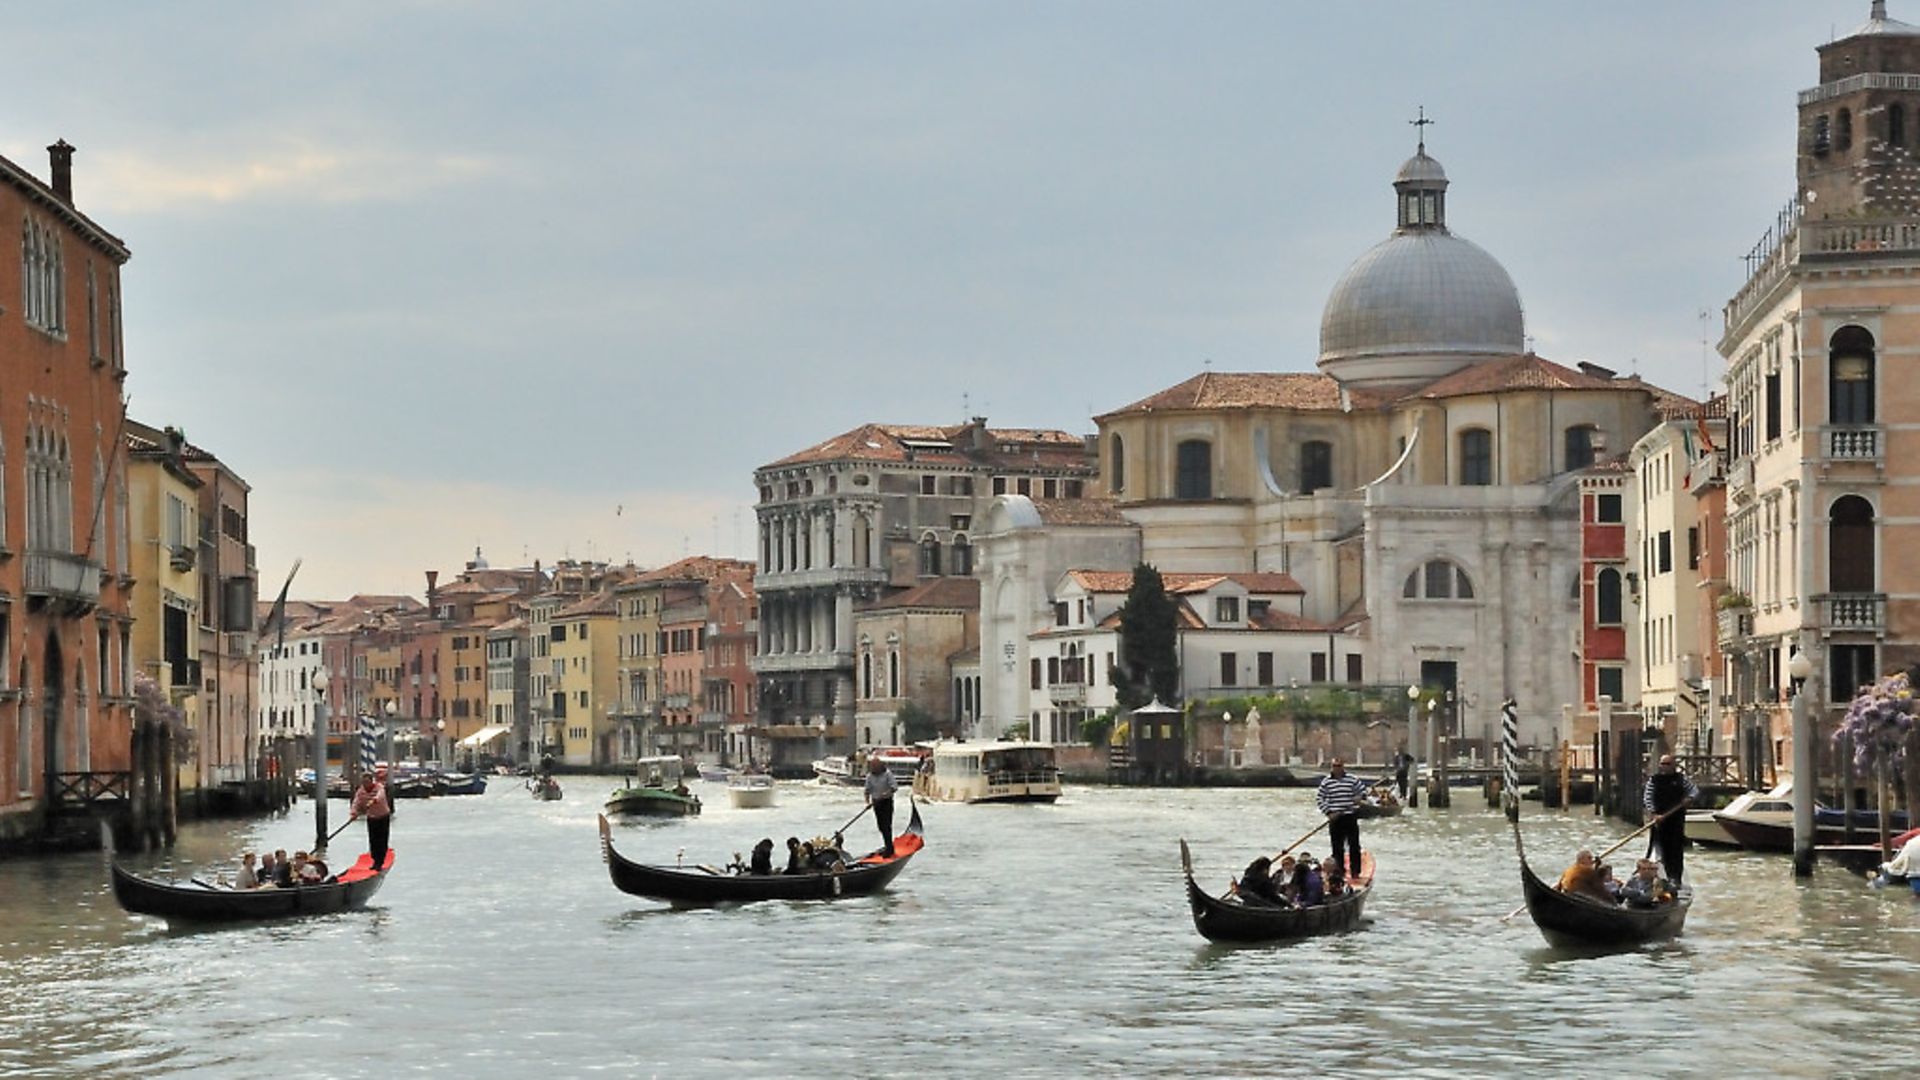 Gondoliers in Venice (question six) (Pic: Saffron Blaze) - Credit: Saffron Blaze